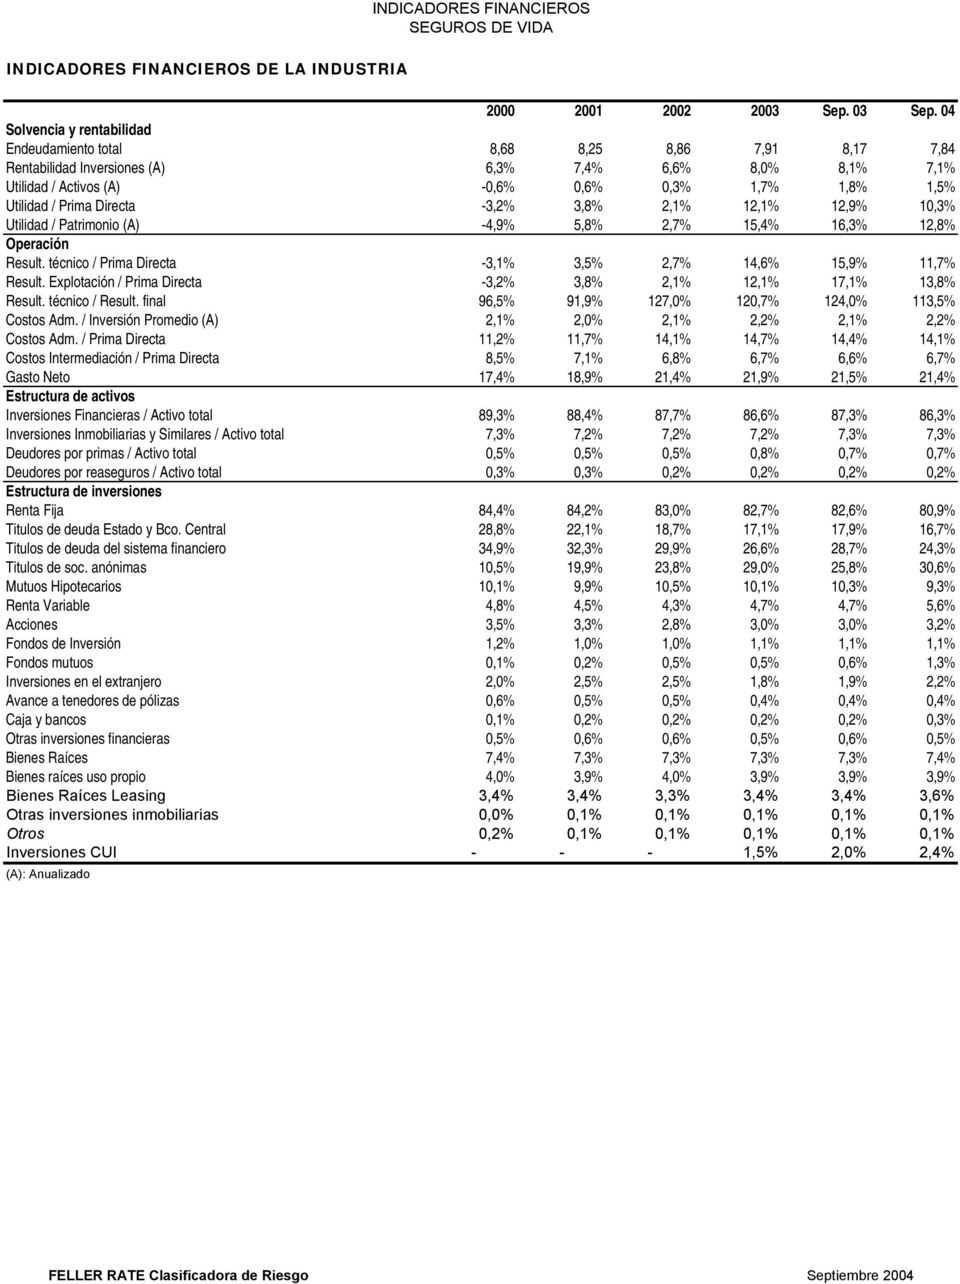 / Prima Directa -3,2% 3,8% 2,1% 12,1% 12,9% 10,3% Utilidad / Patrimonio (A) -4,9% 5,8% 2,7% 15,4% 16,3% 12,8% Operación Result. técnico / Prima Directa -3,1% 3,5% 2,7% 14,6% 15,9% 11,7% Result.